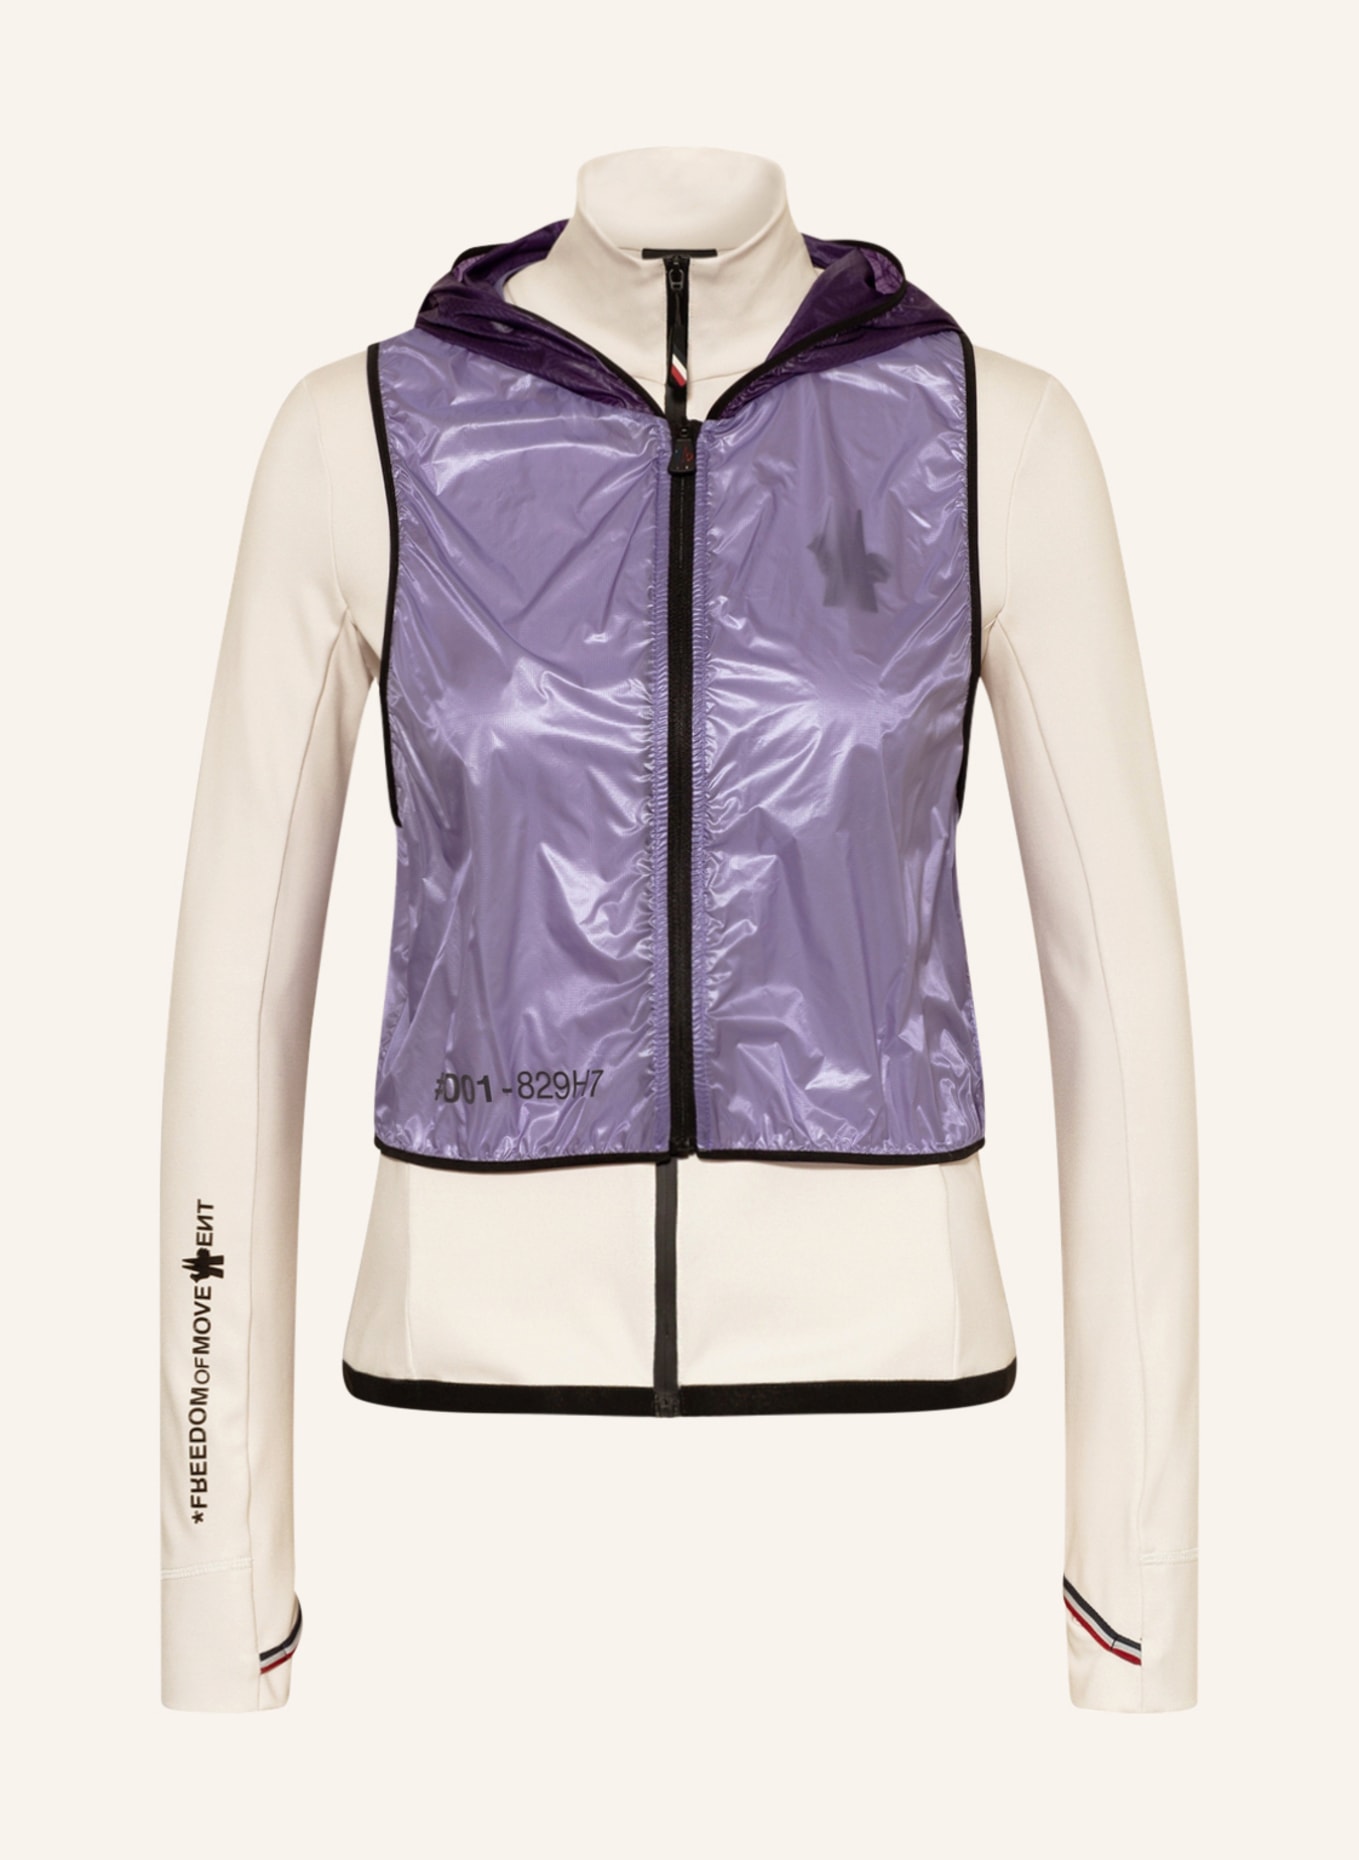 MONCLER GRENOBLE Jacket with detachable vest, Color: CREAM/ PURPLE (Image 1)